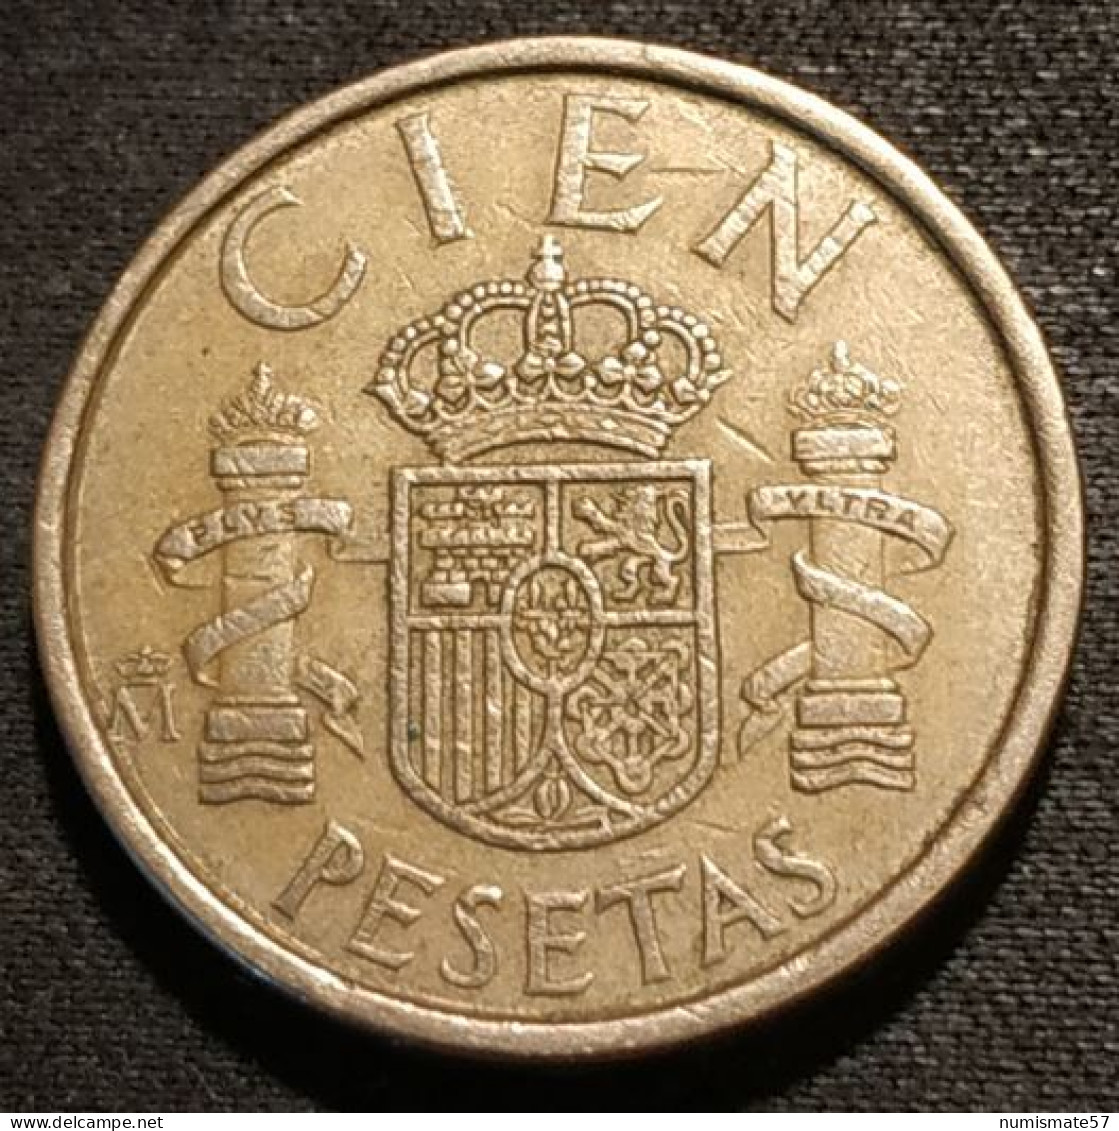 ESPAGNE - ESPANA - SPAIN - 100 PESETAS 1986 - Modéle CIEN - KM 826 - 100 Pesetas